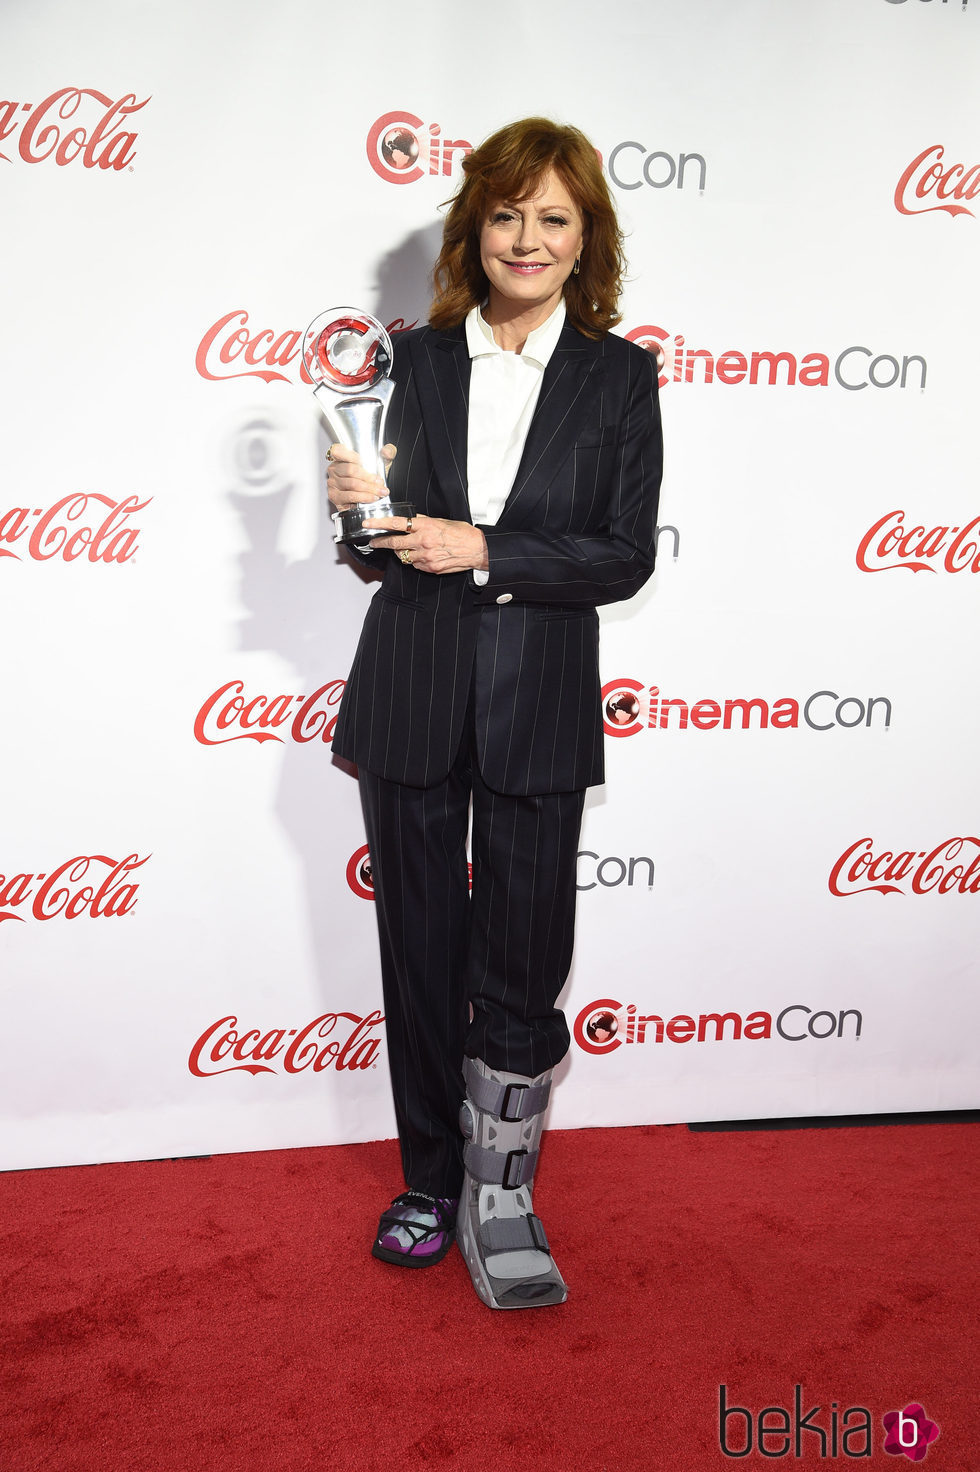 Susan Sarandon en el festival de cine CinemaCon 2016